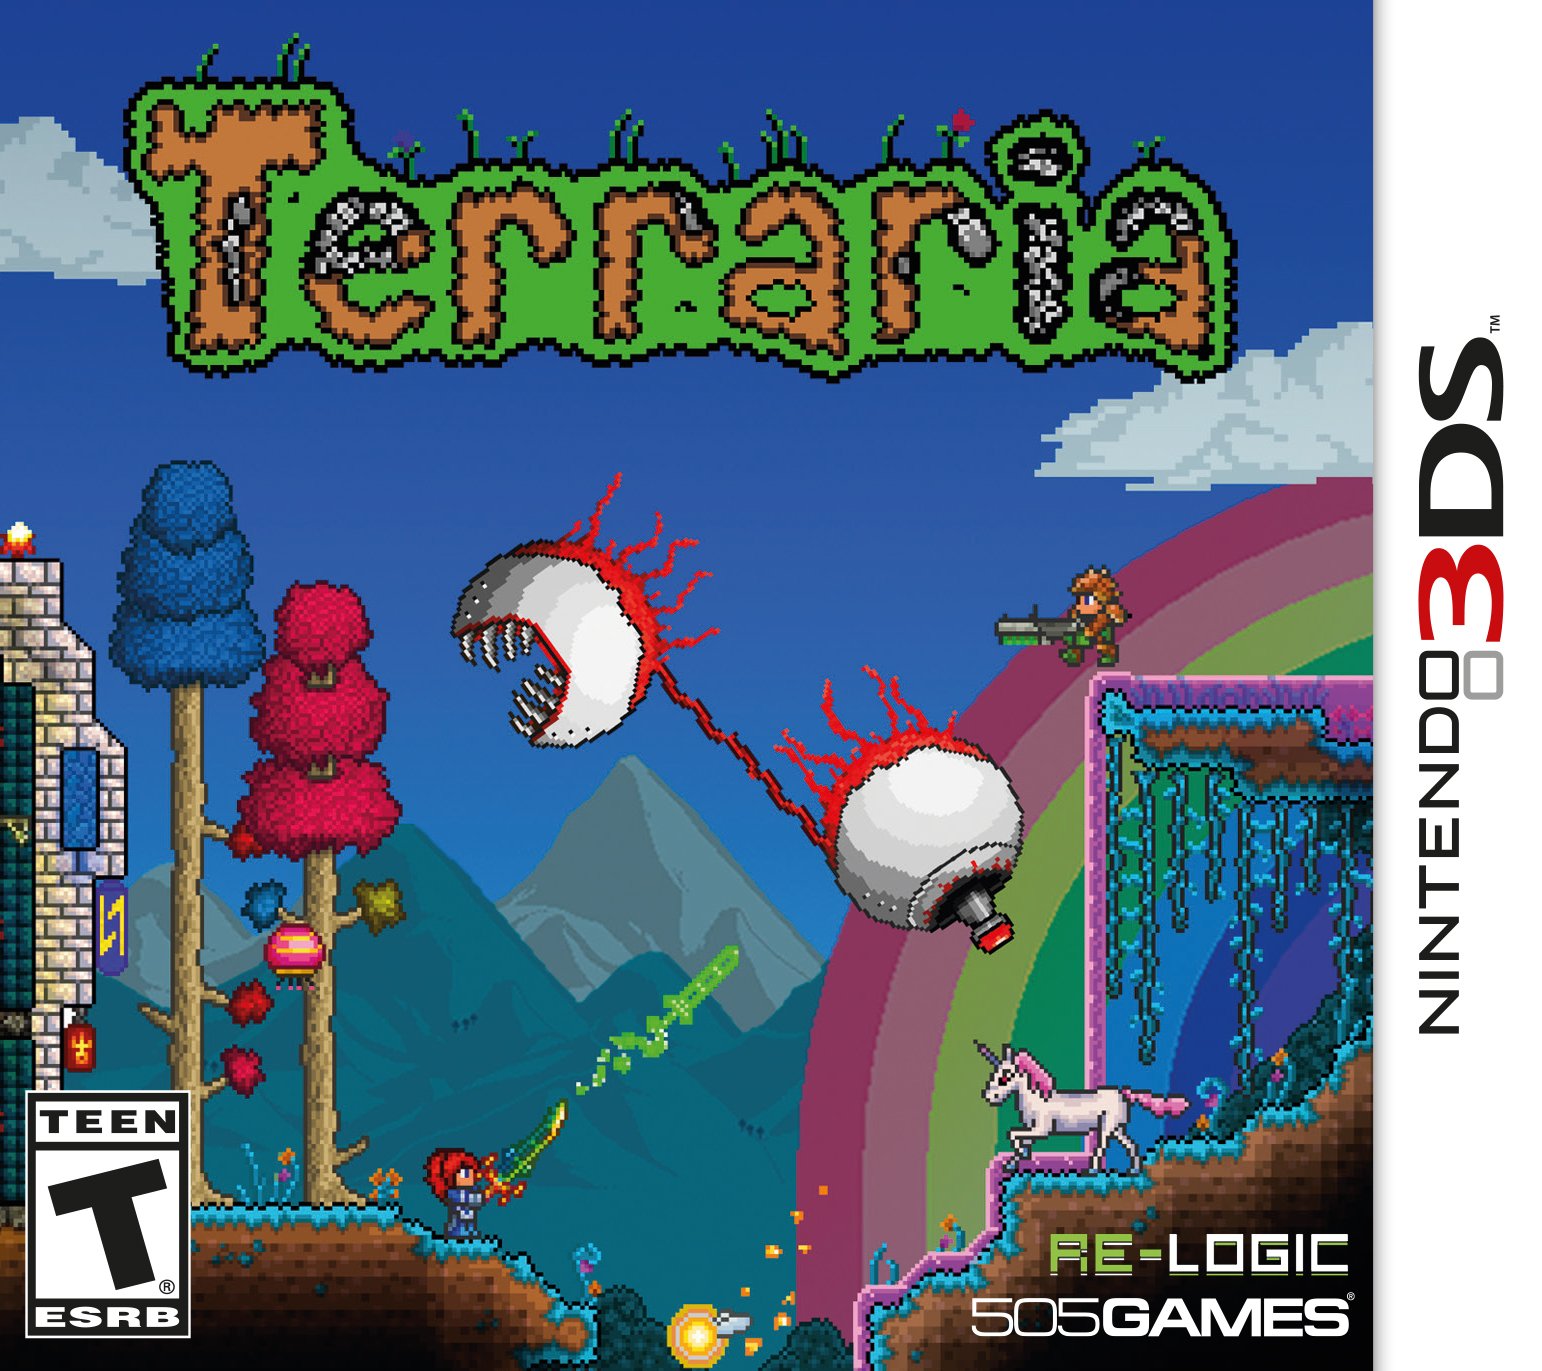 Terraria 2 release date